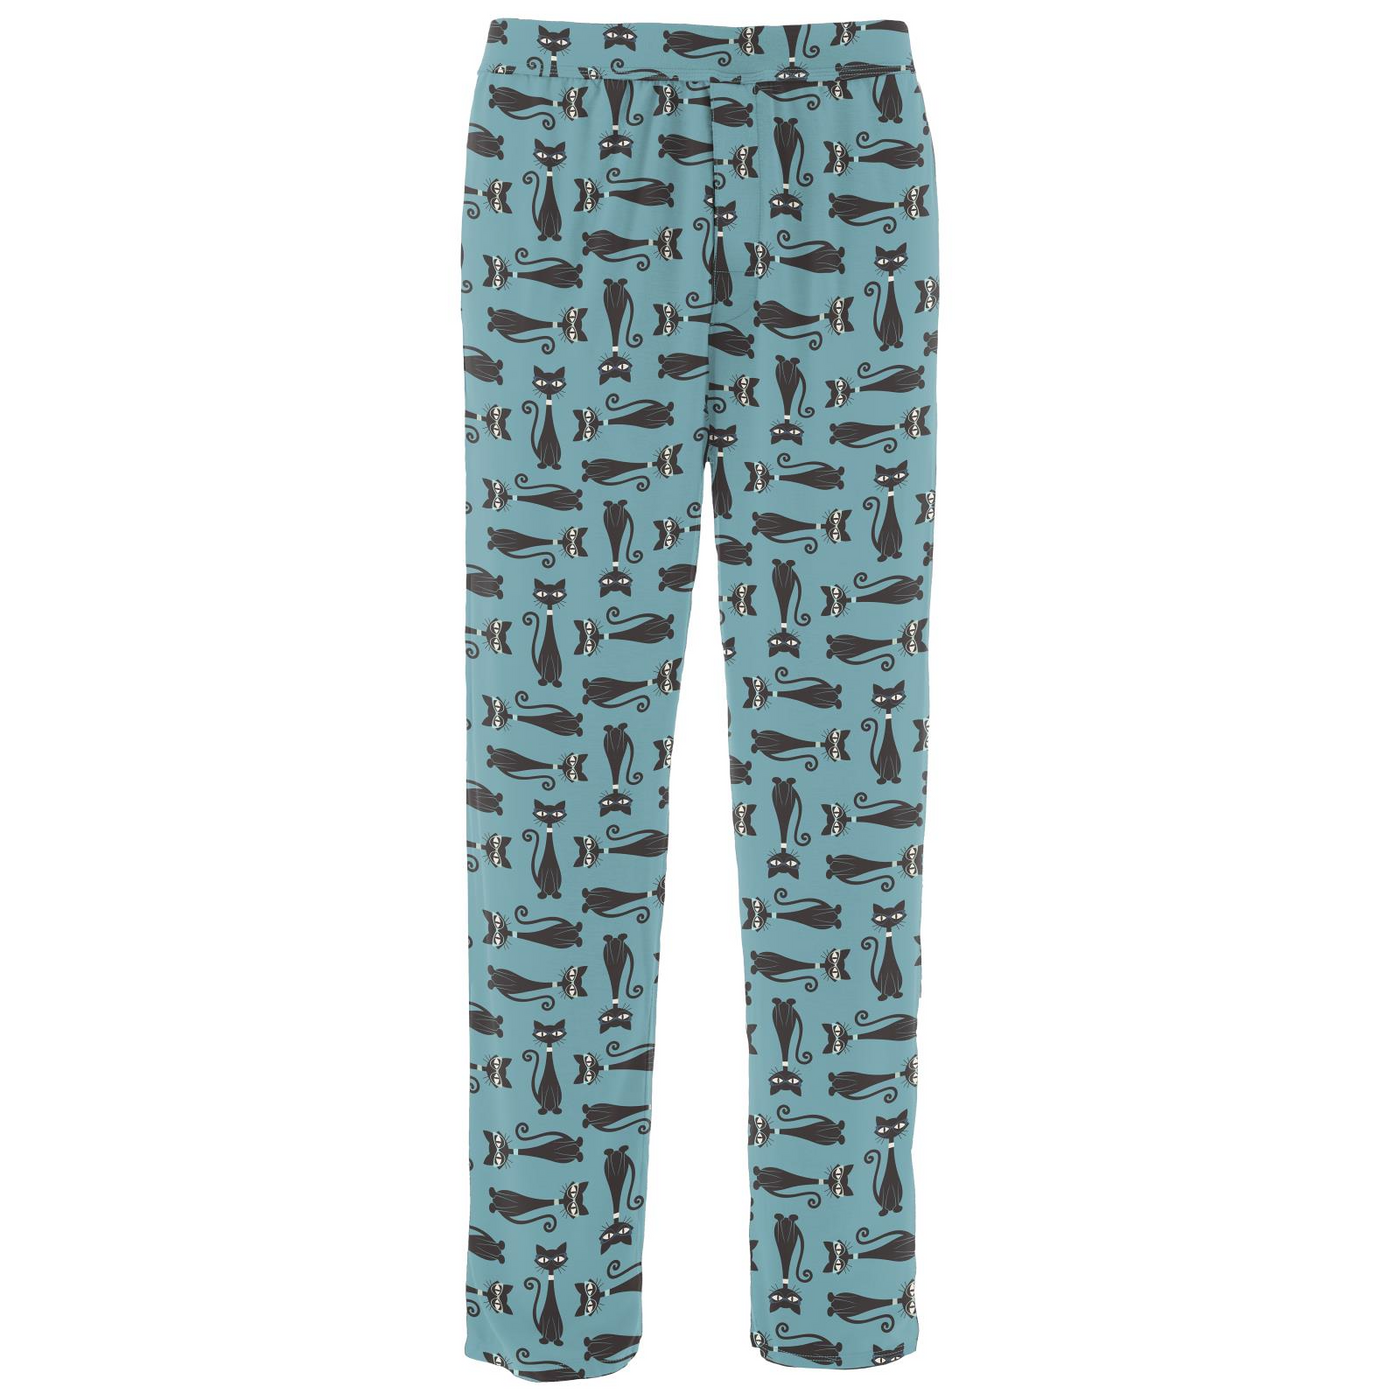 Kickee Pants Men's Pajama Pants: Glacier Cool Cats